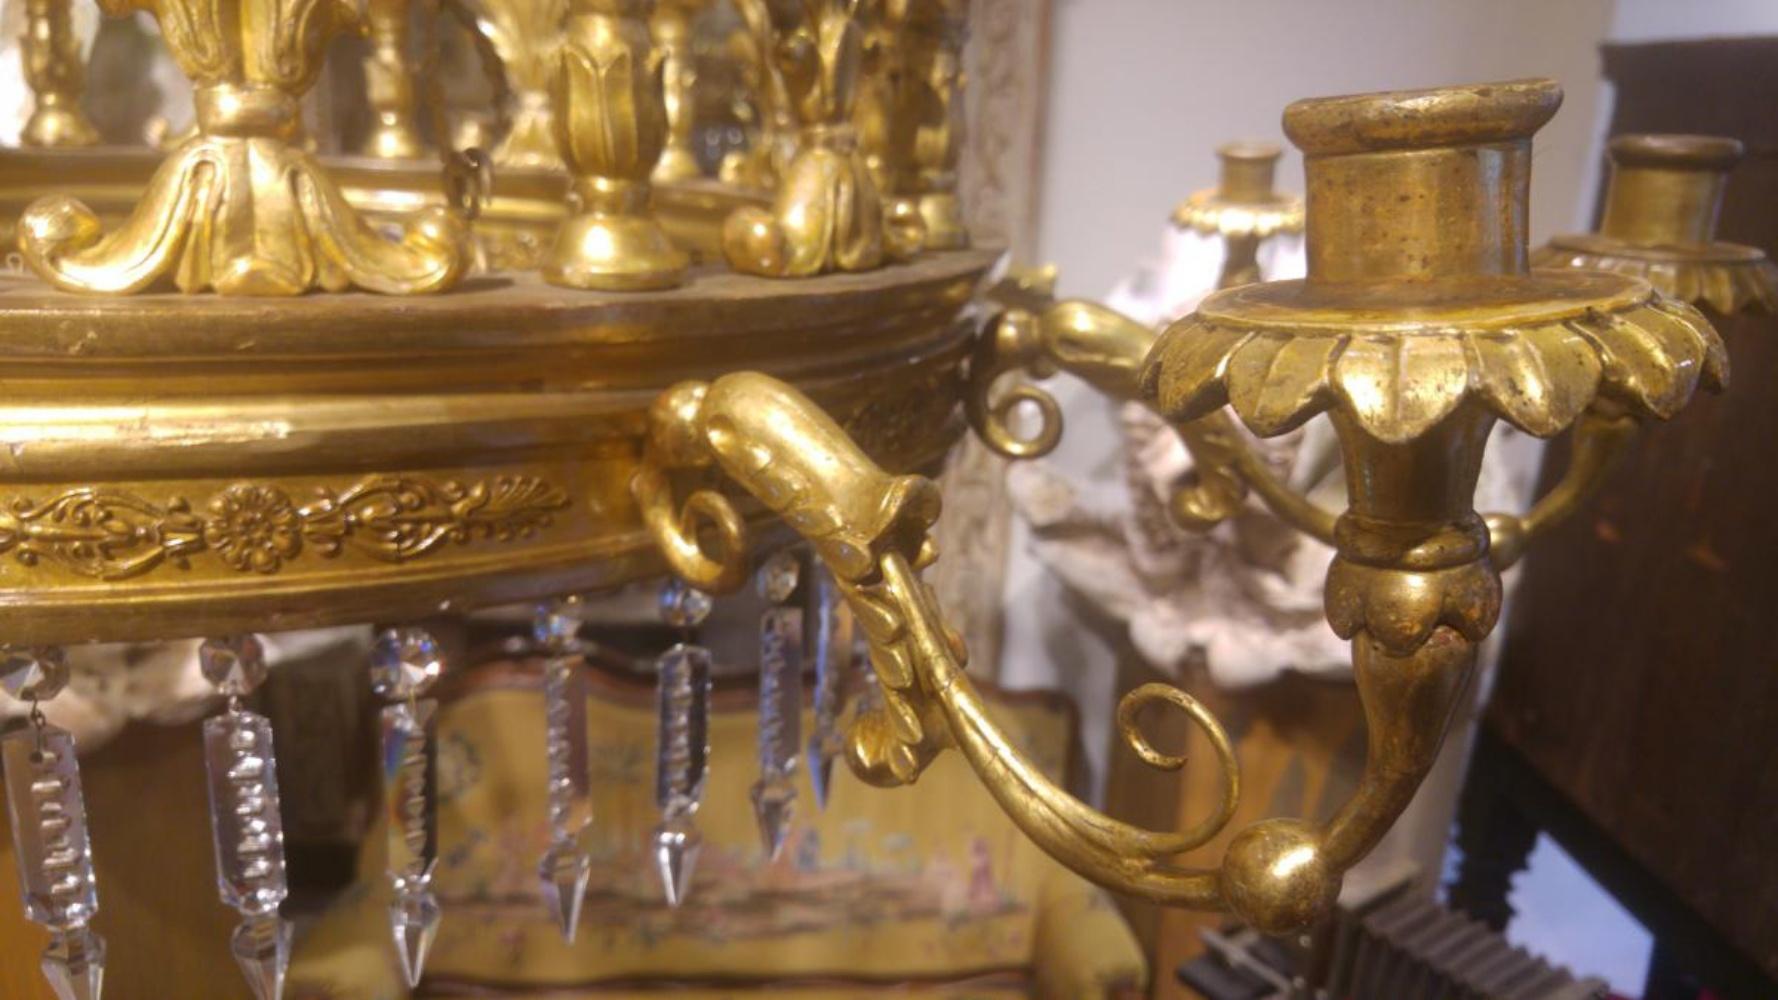 Exceptionnelle lampe en bois sculpté et doré de l'époque de Carlos IV, 
avec un anneau unique et un chandelier à 20 lumières ; dix verticales et dix enroulements de feuillage. 
Il est vendu dans son état actuel ; avec ses chaînes et sa couronne de